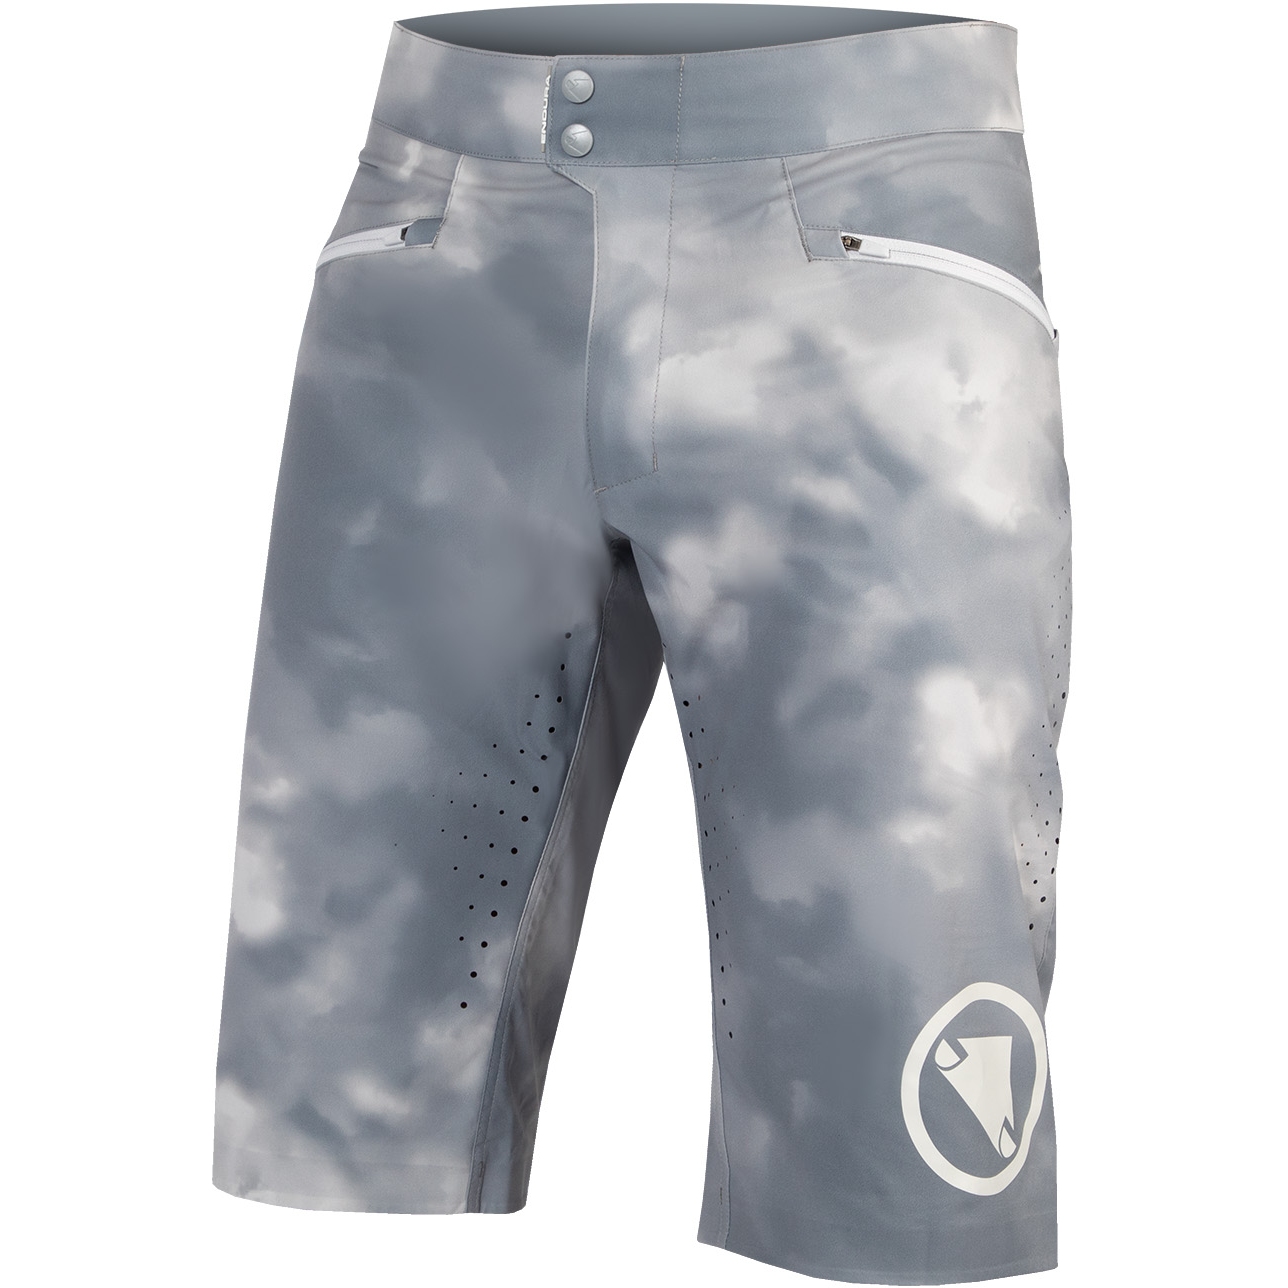 Produktbild von Endura SingleTrack Lite Shorts Herren - Short Fit - grau